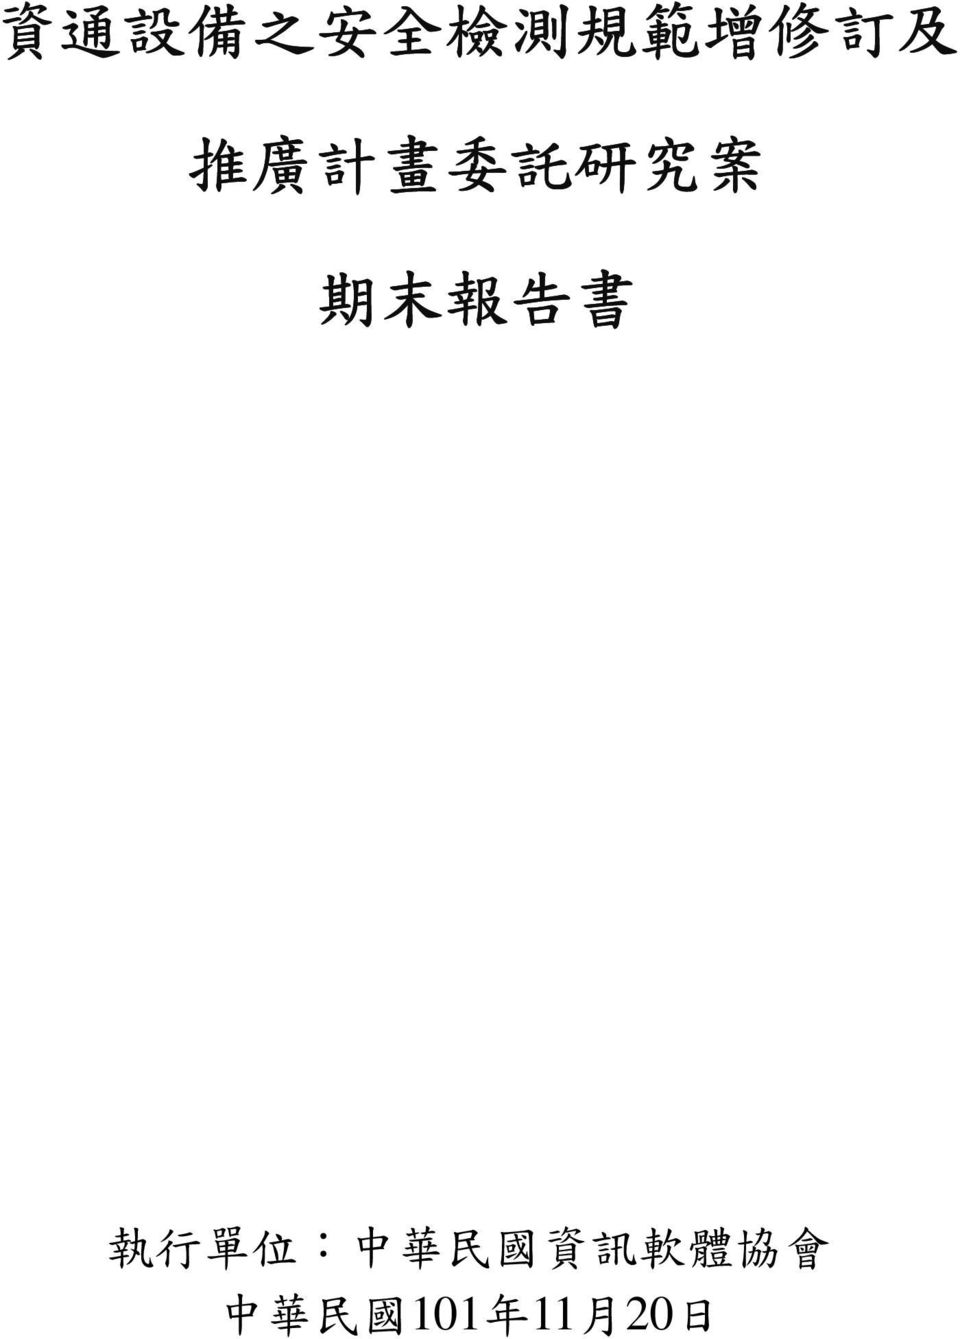 書 執 行 單 位 : 中 華 民 國 資 訊 軟 體